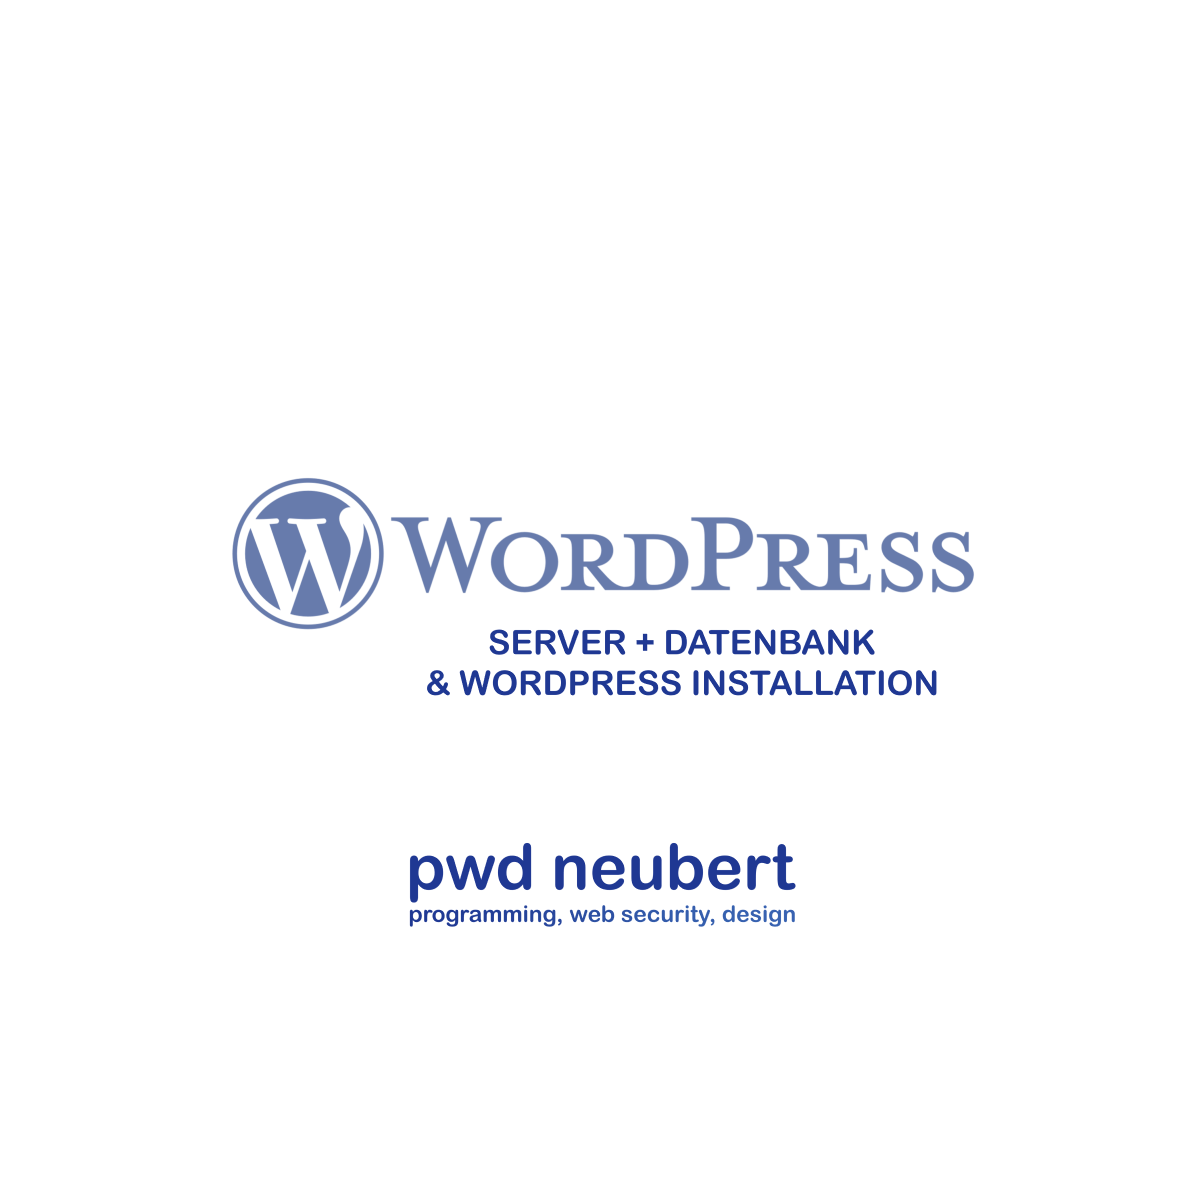 WordPress Installation | Server einrichten & Datenbank erstellen | pwd neubert